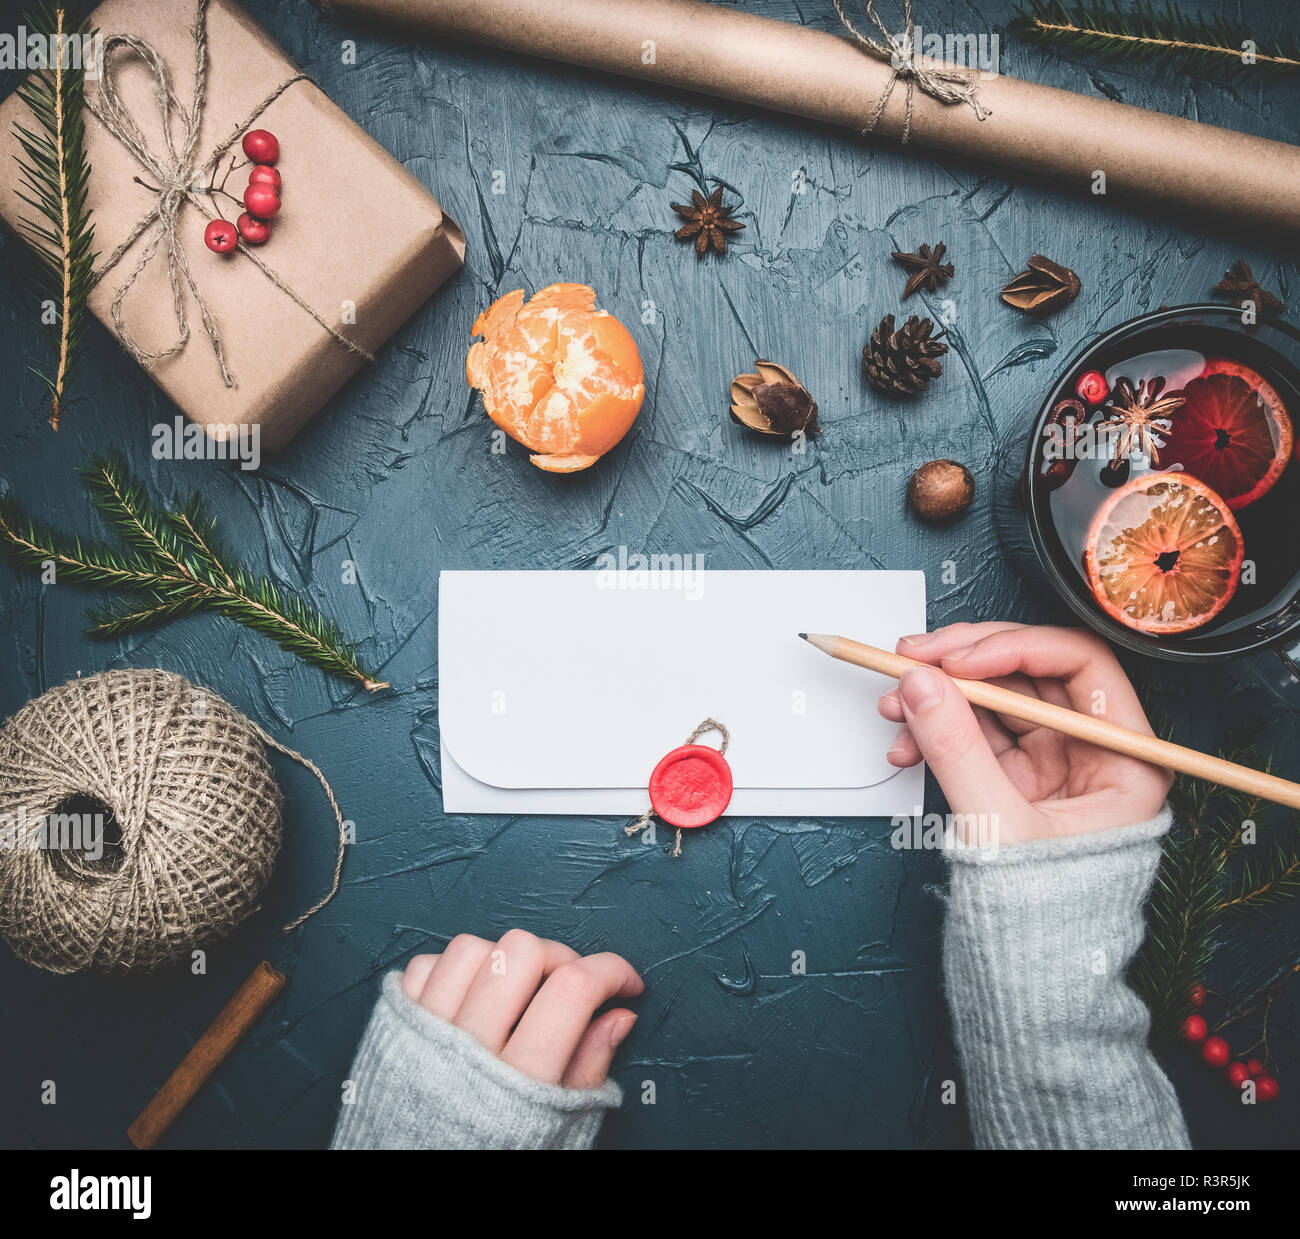 Fille signe une enveloppe avec félicitations pour la nouvelle année ou de Noël, à côté se trouve un cadeau, tangerines, matériaux d'emballage, tasse de vin chaud, mandari Banque D'Images